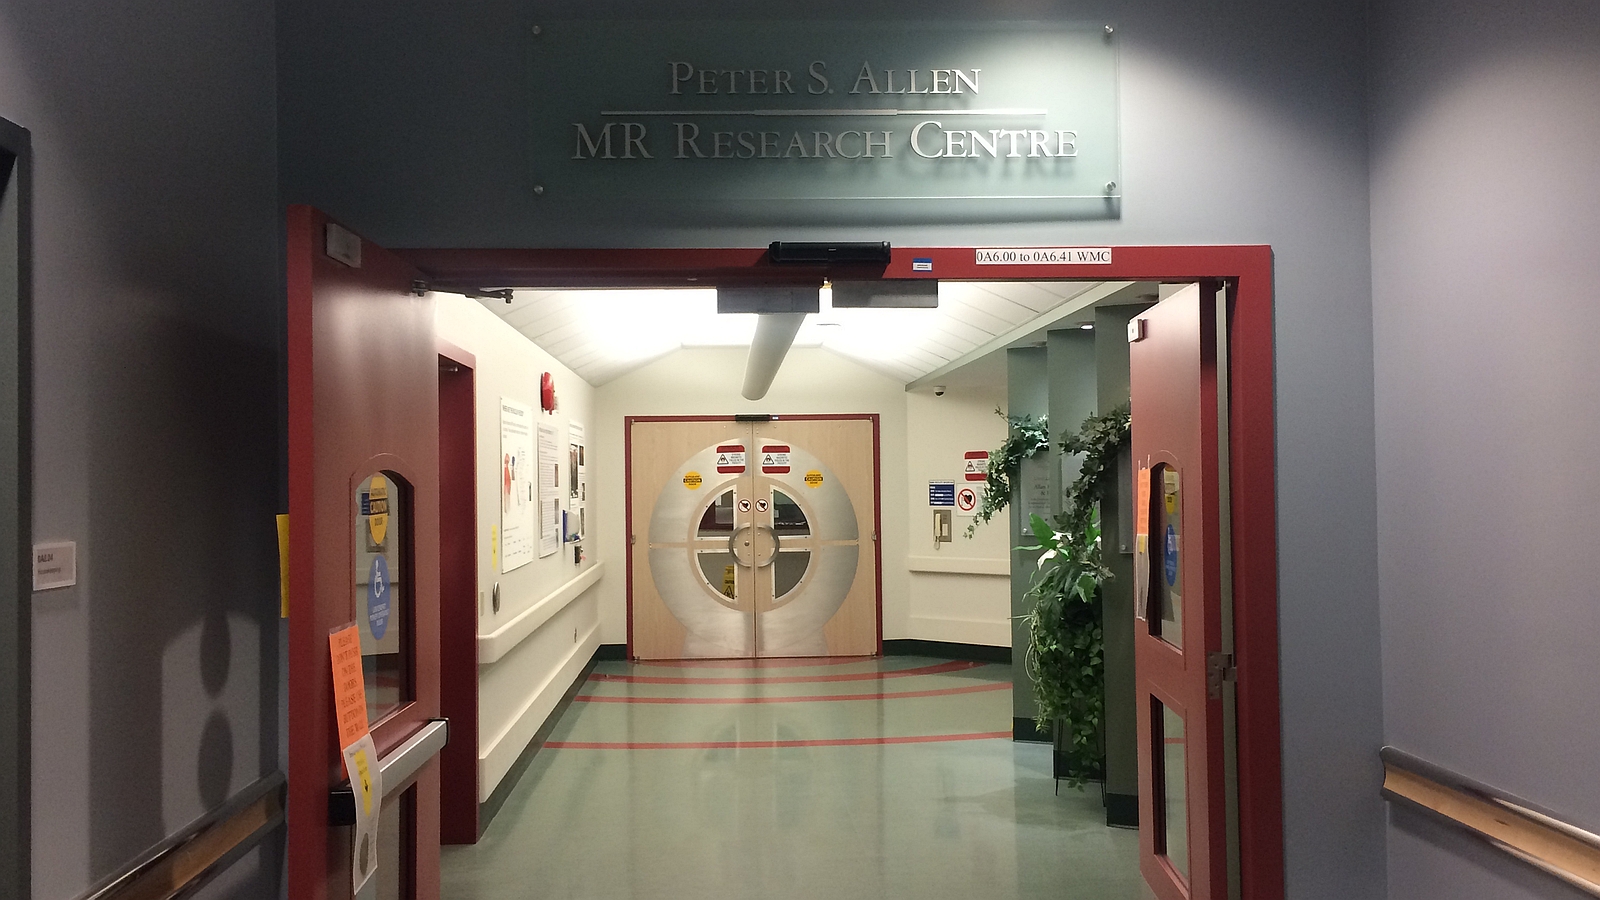 Peter S Allen MR Research Centre entrance